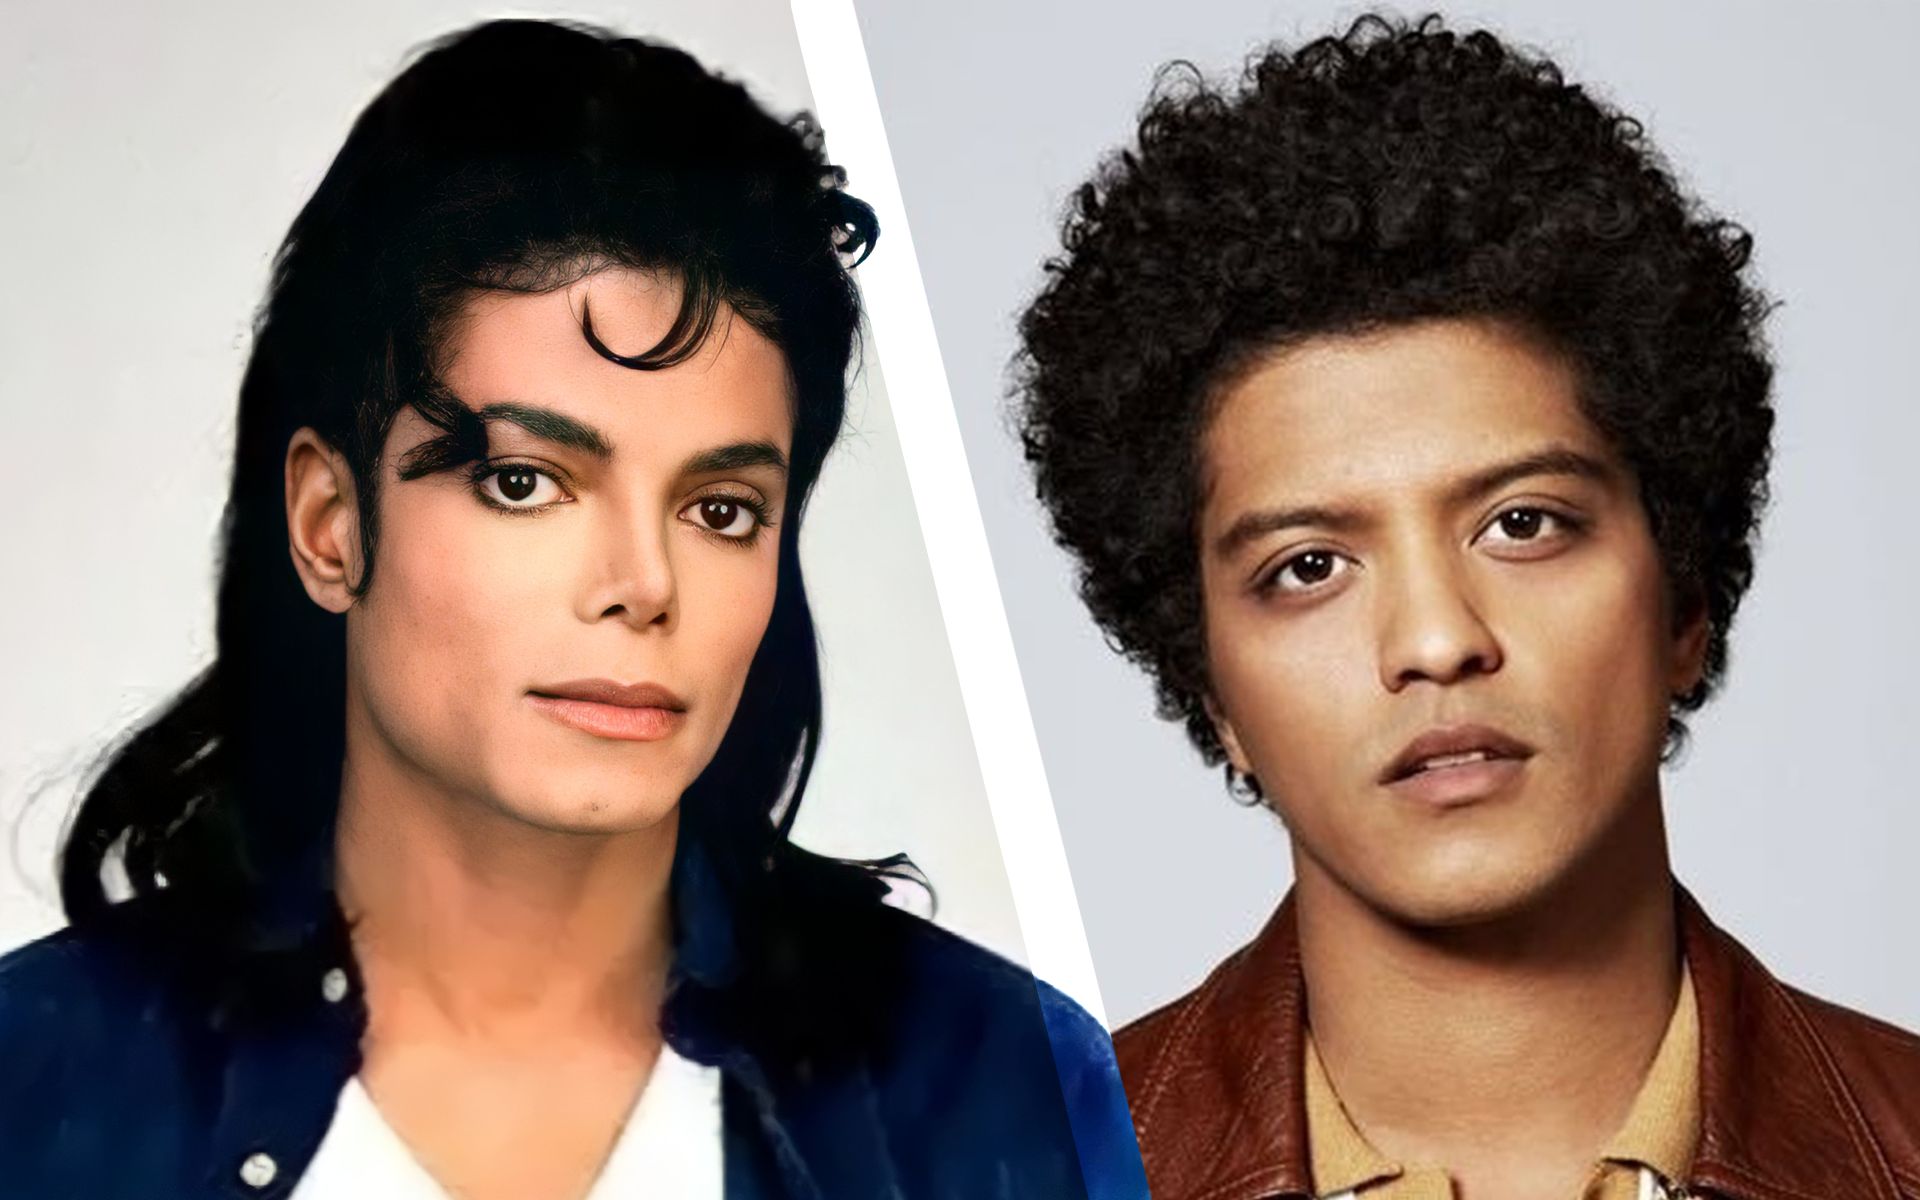 [图]【迈克尔杰克逊&火星哥】如果用MJ的舞蹈配火星哥的歌曲会是什么效果「Jam & Uptown funk」混剪